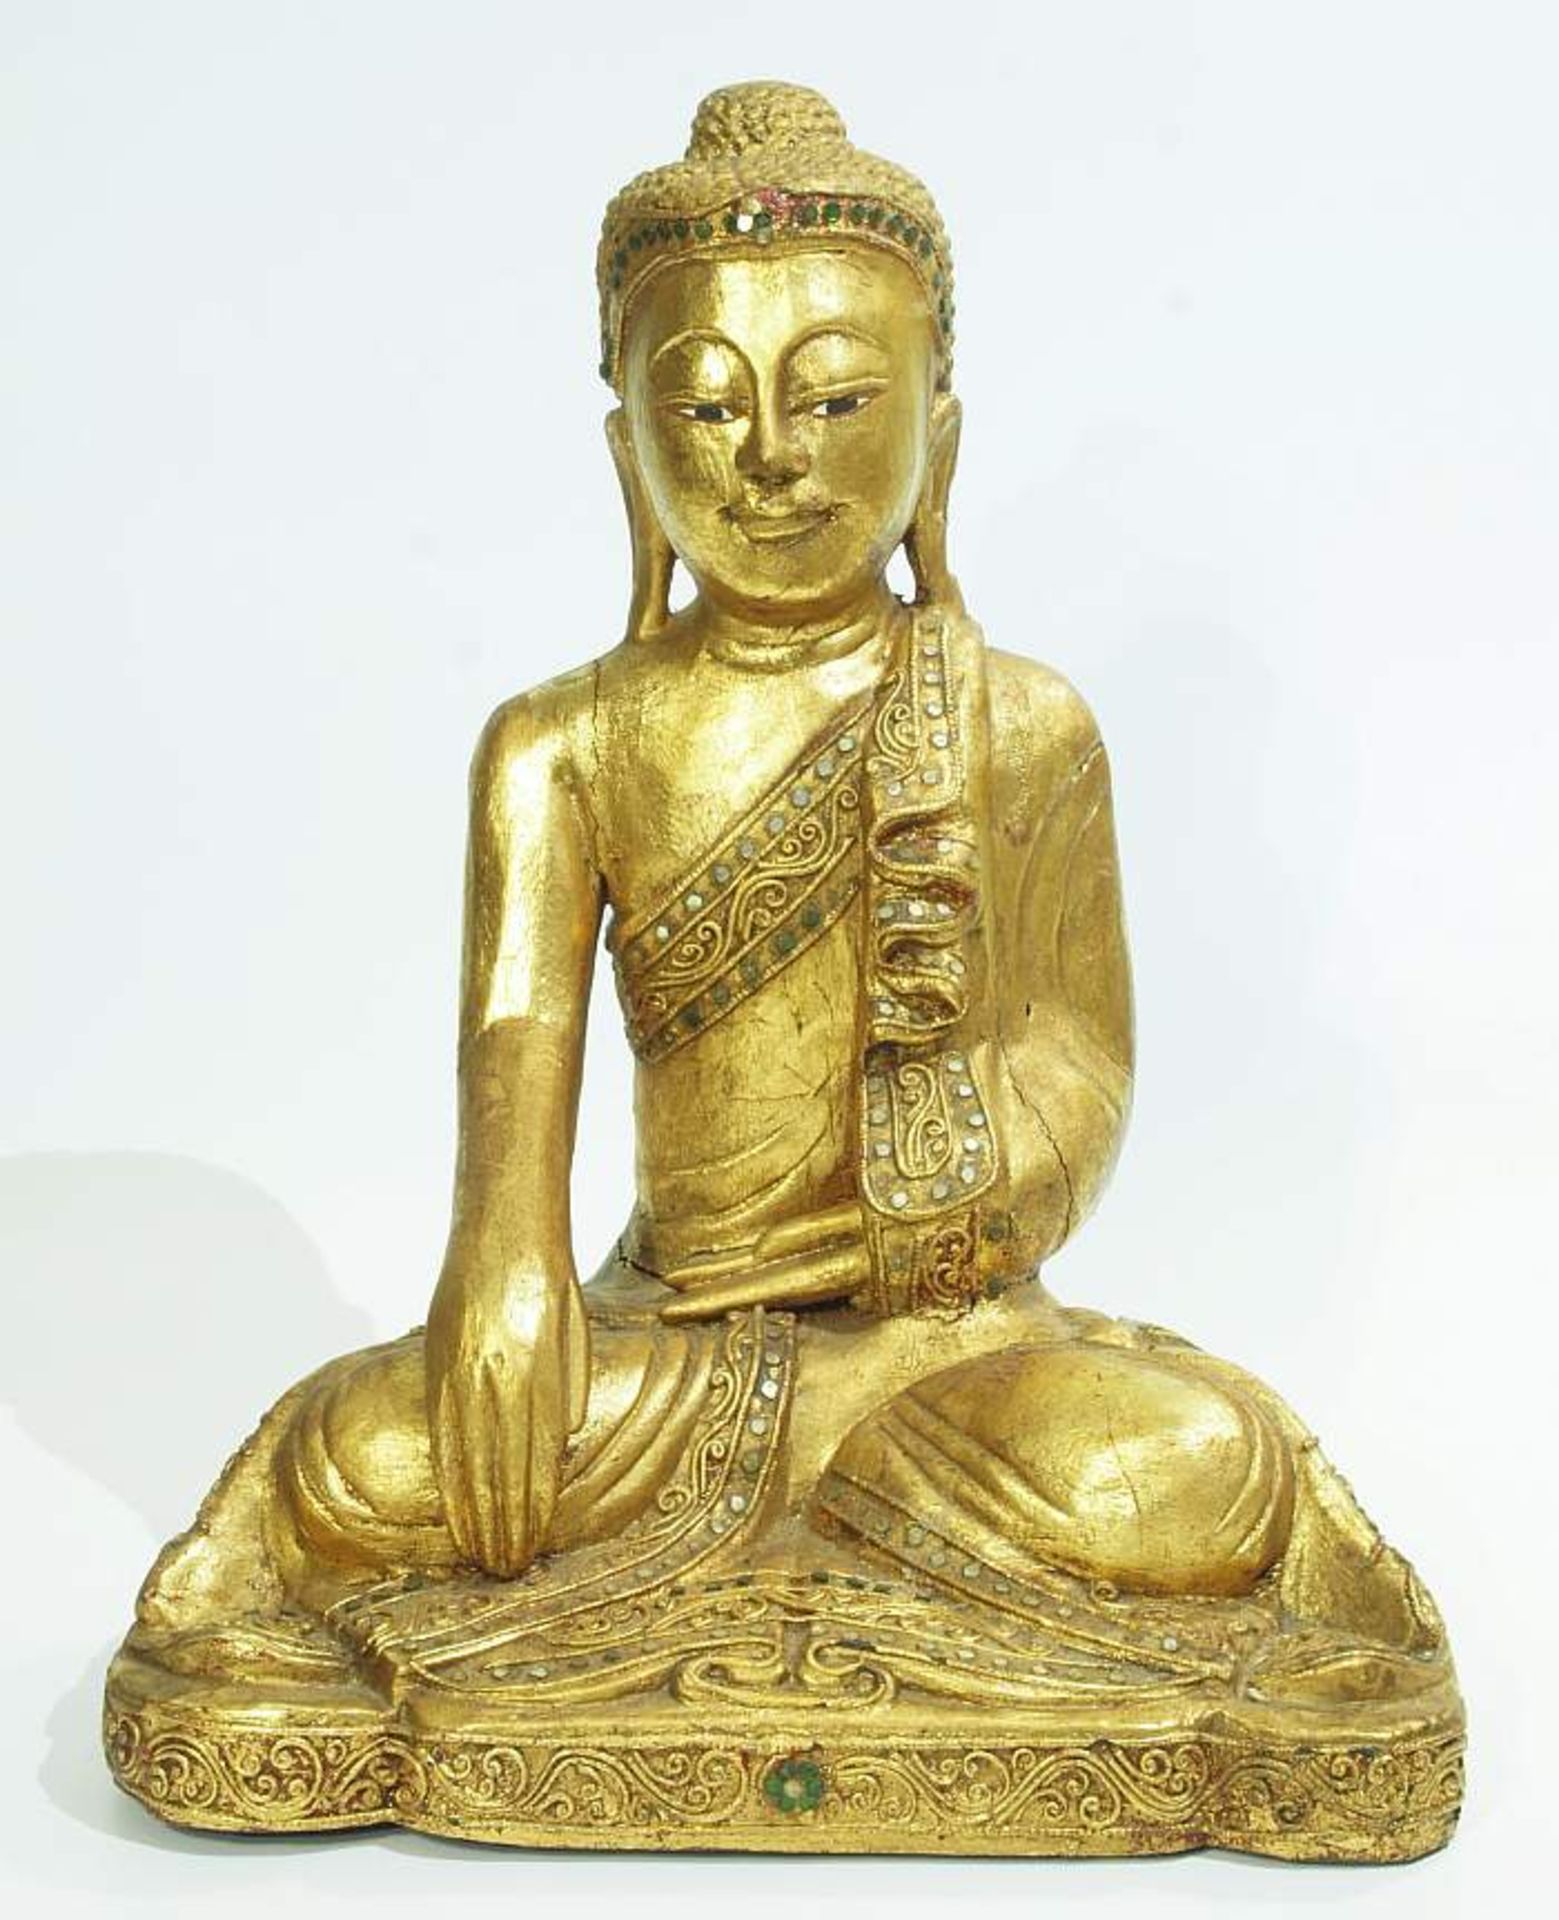 Sitzender Buddha.
Sitzender Buddha. Holz, gold gefasst, aufgesetzte Glassteine. Darstellung als